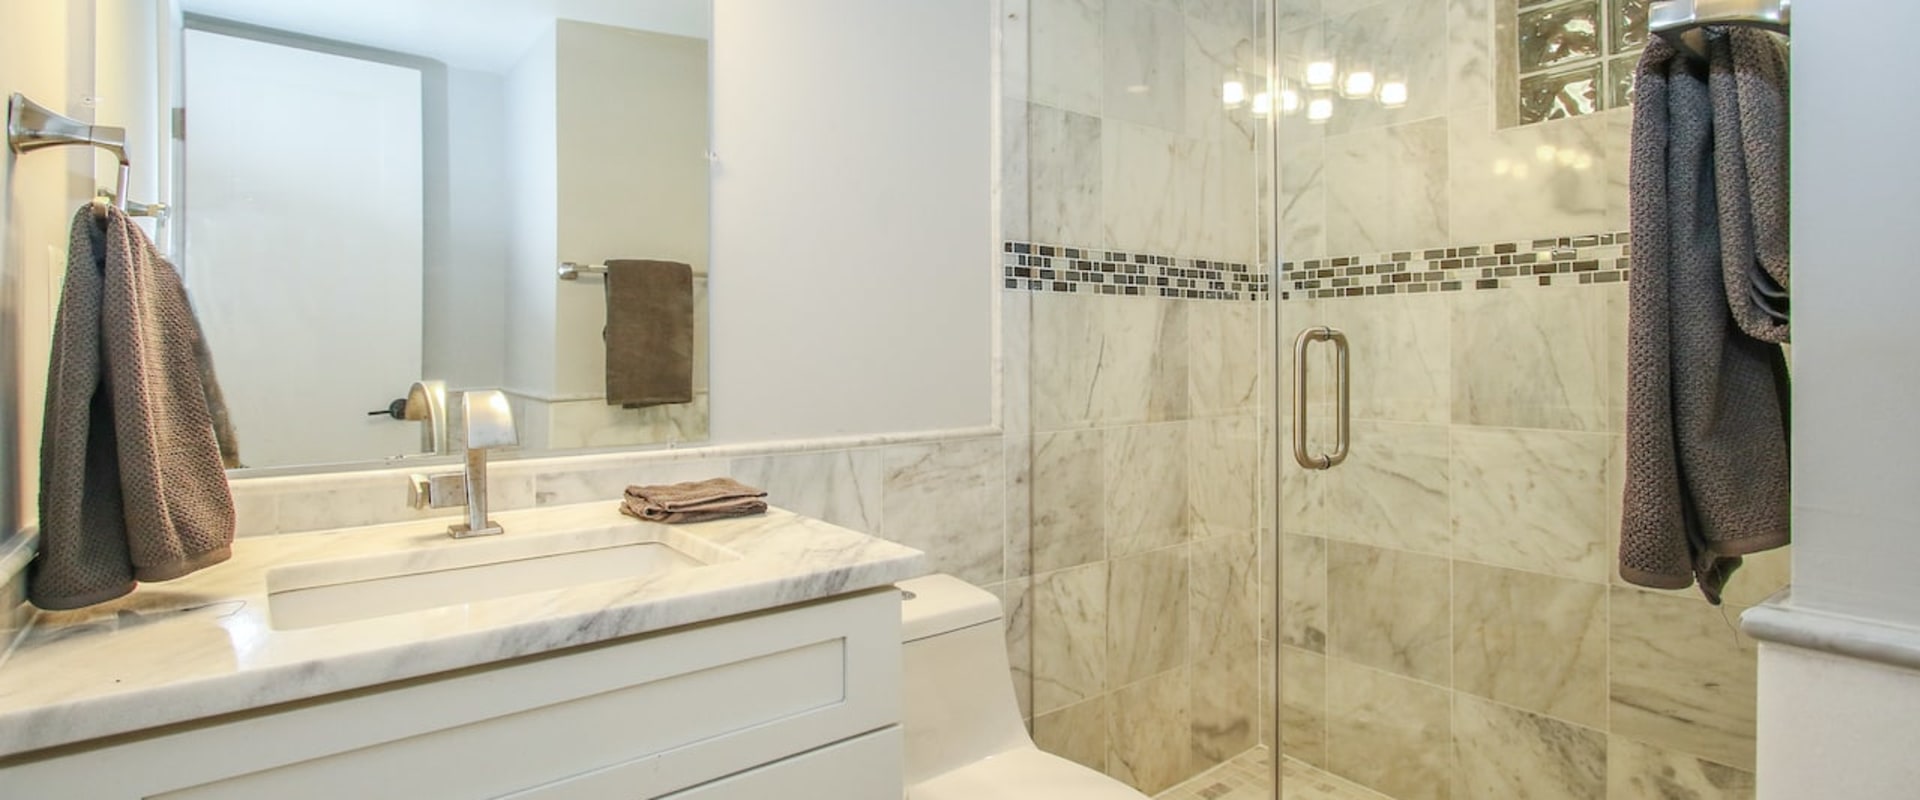 The Hidden Costs of Bathroom Renovations